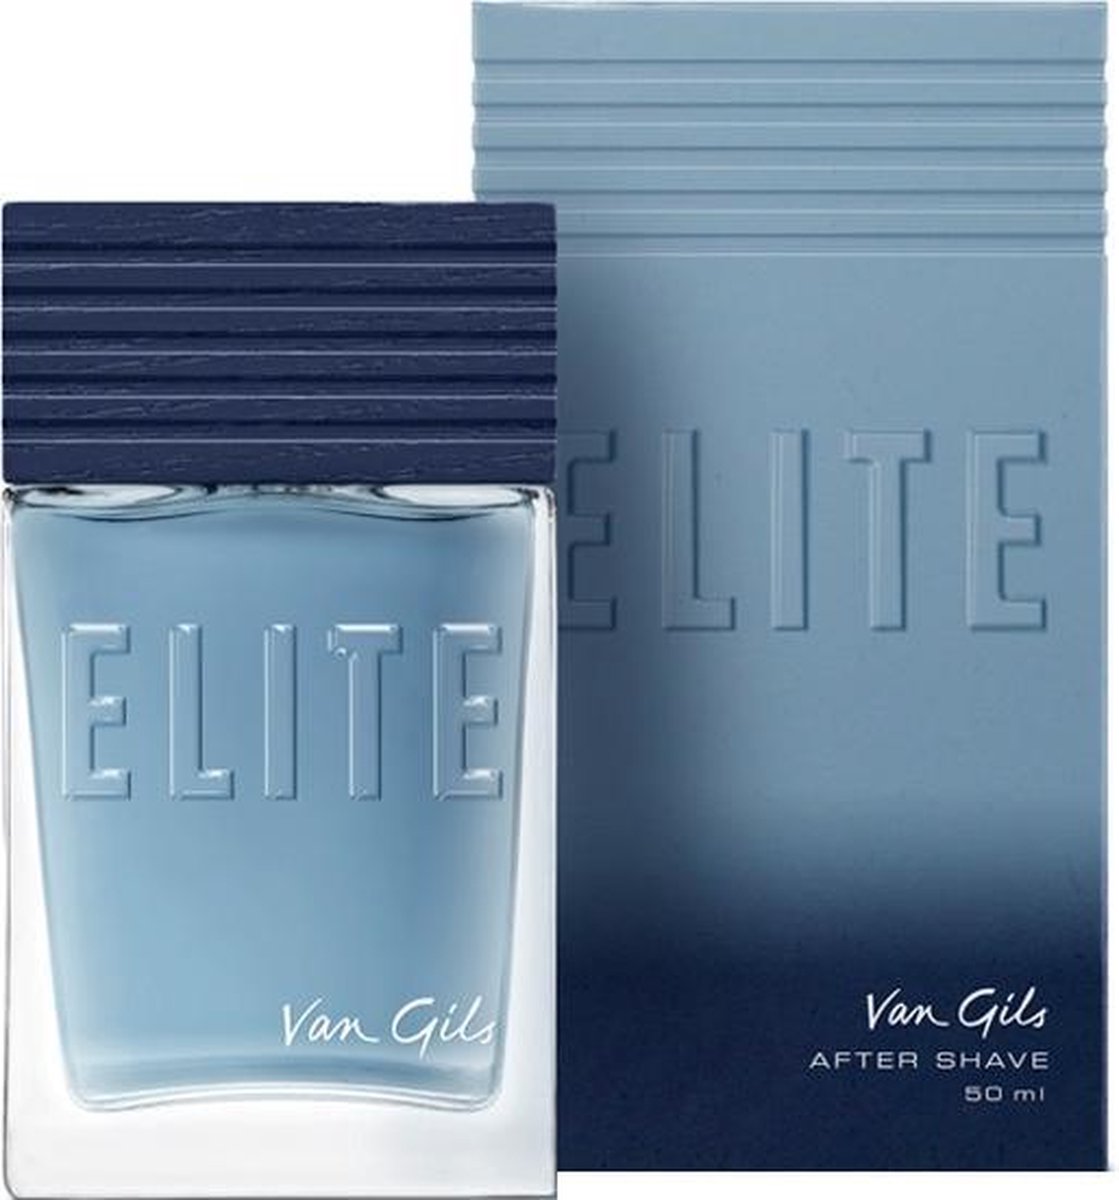 Van Gils - Elite aftershave spray 50 ml